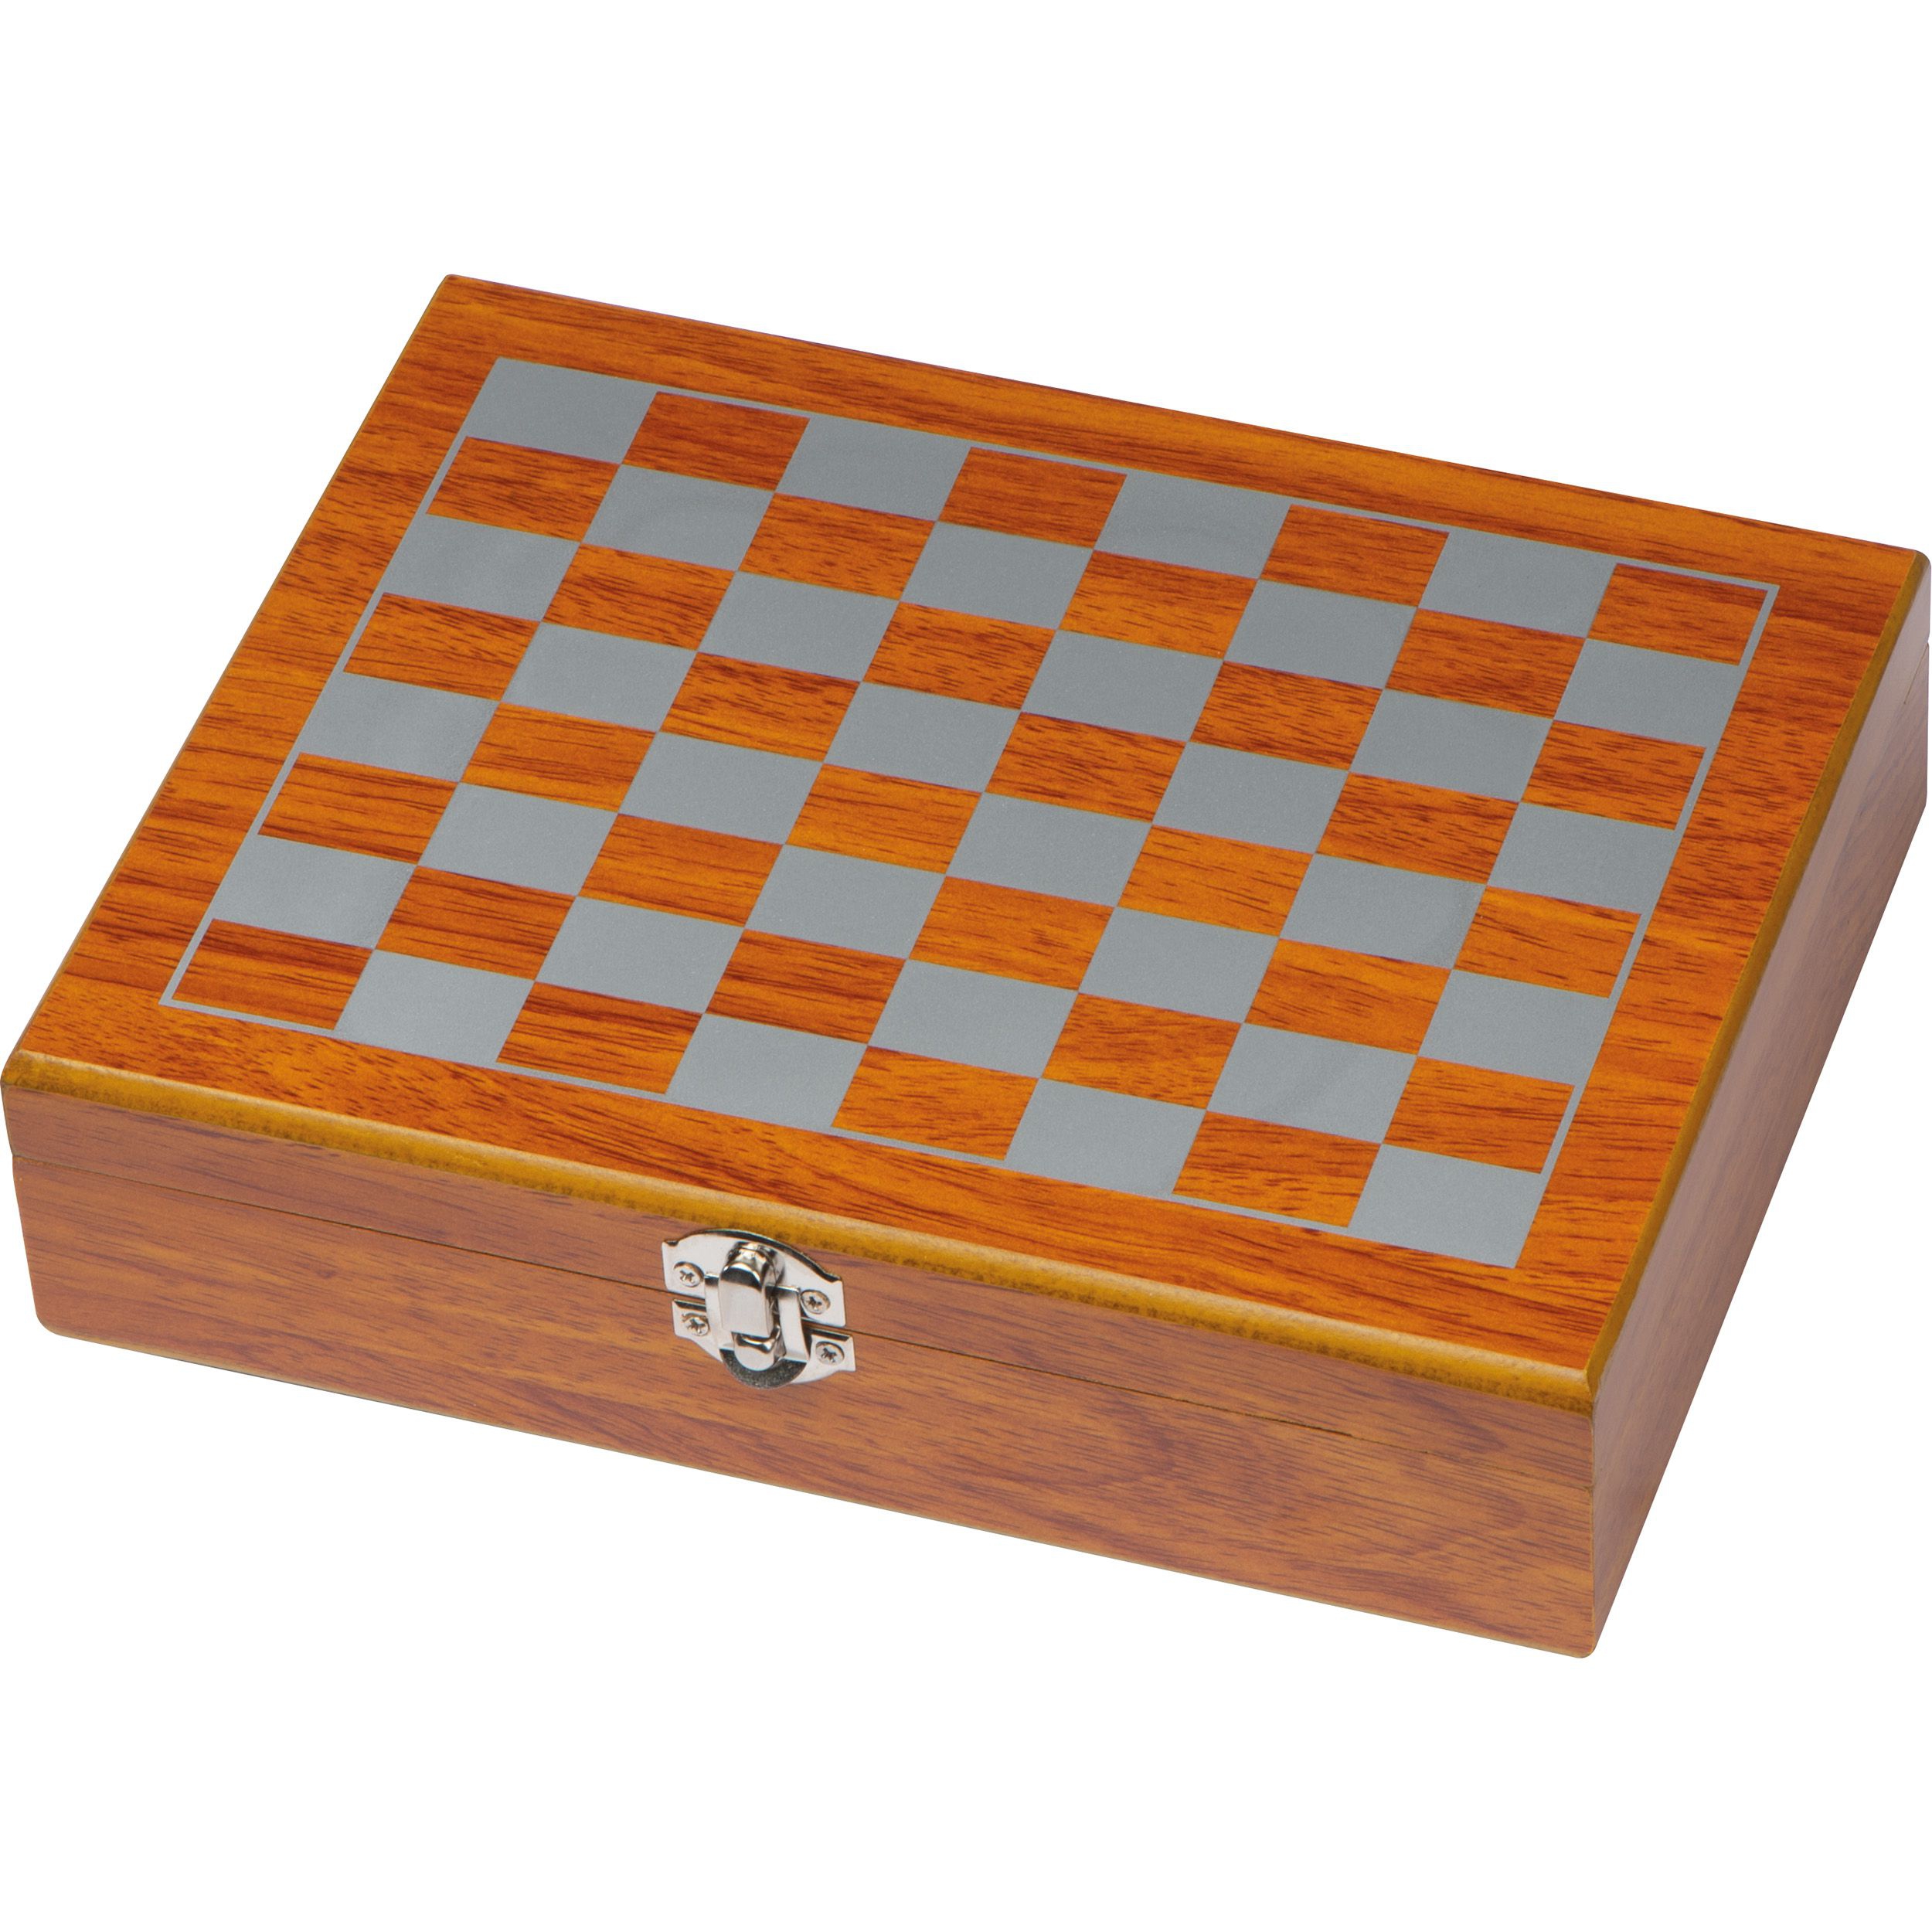 Spieleset mit Flachmann, Schach- und Kartenspiel, braun